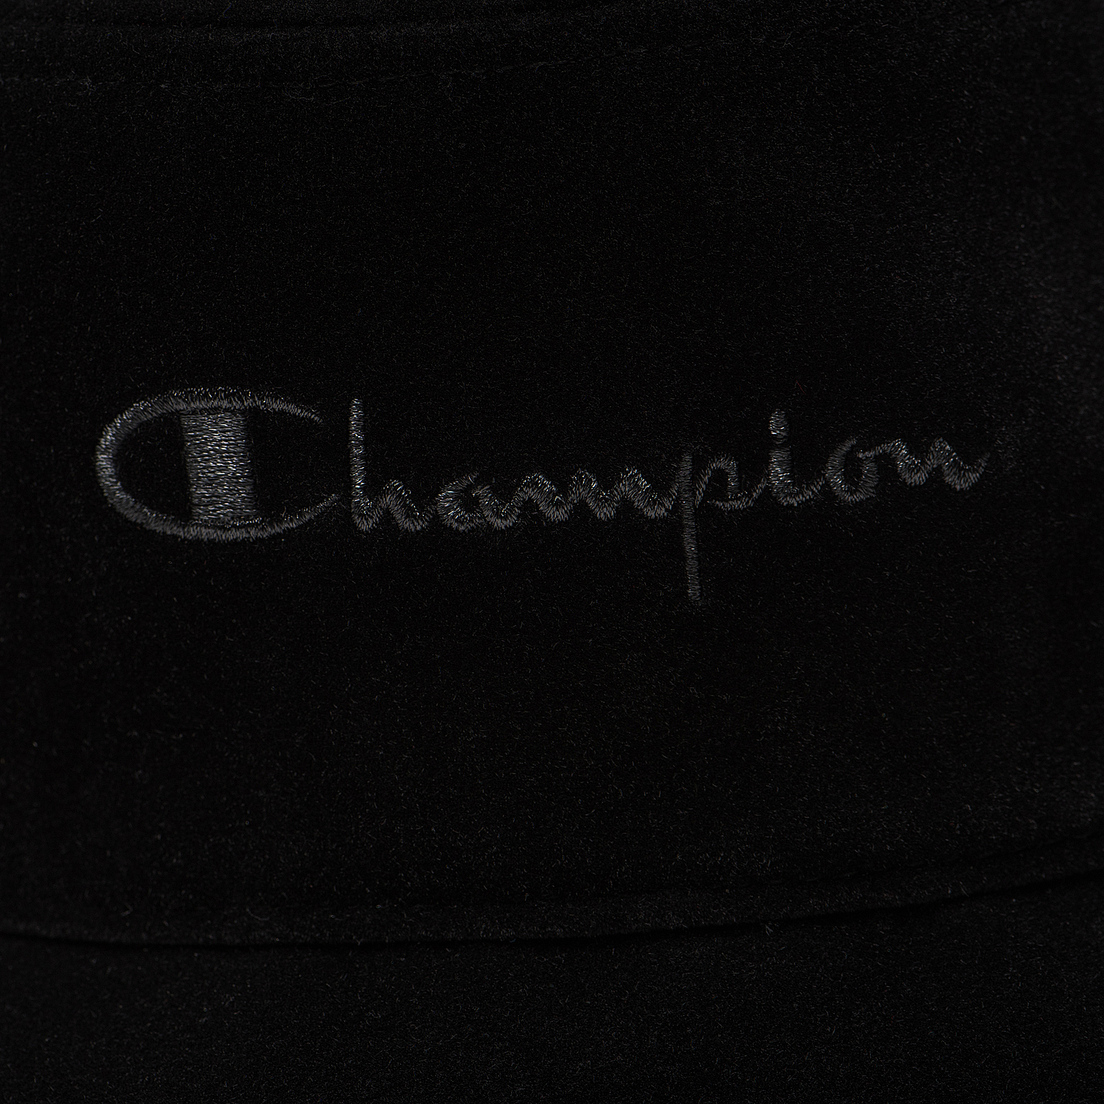 Champion Reverse Weave Панама Velour Bucket